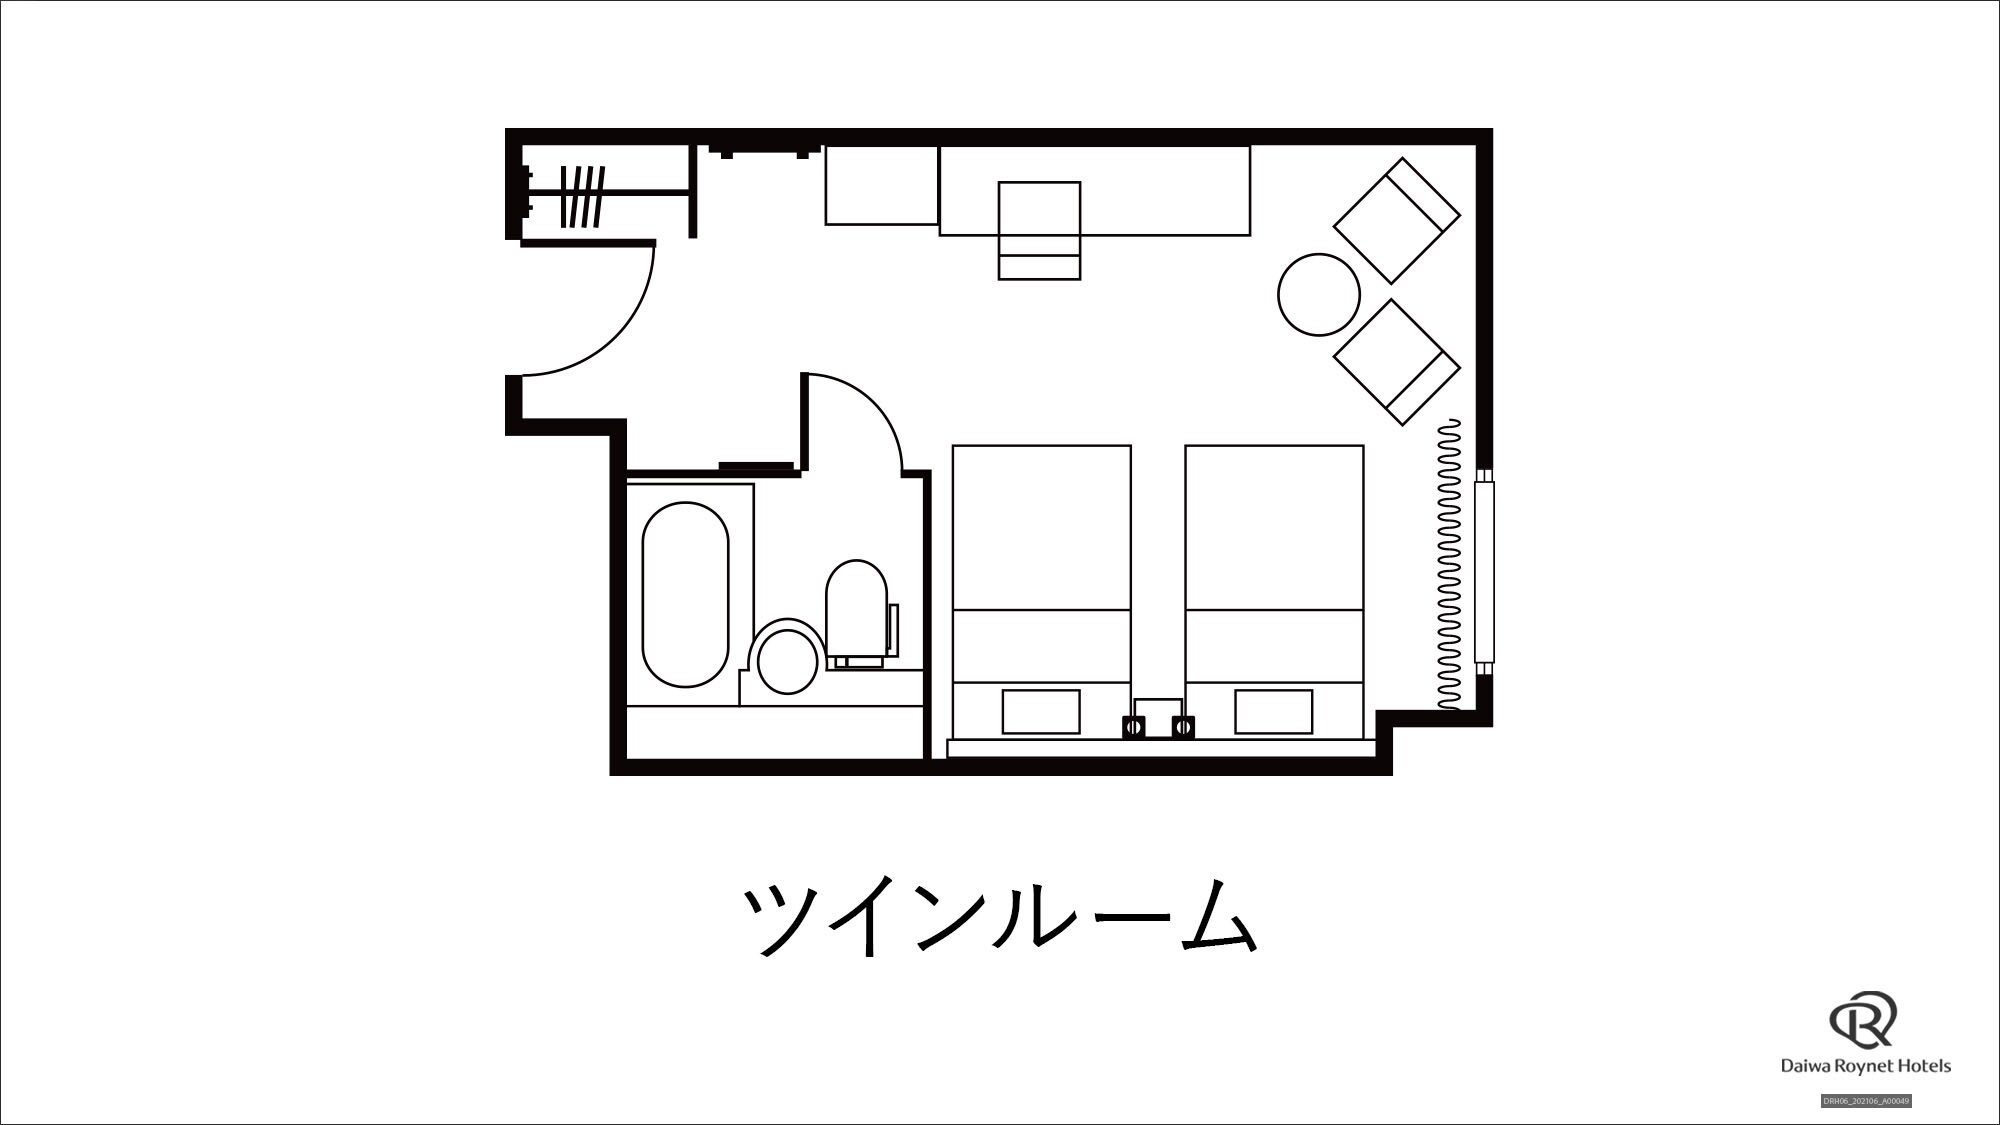 Twin room floor plan